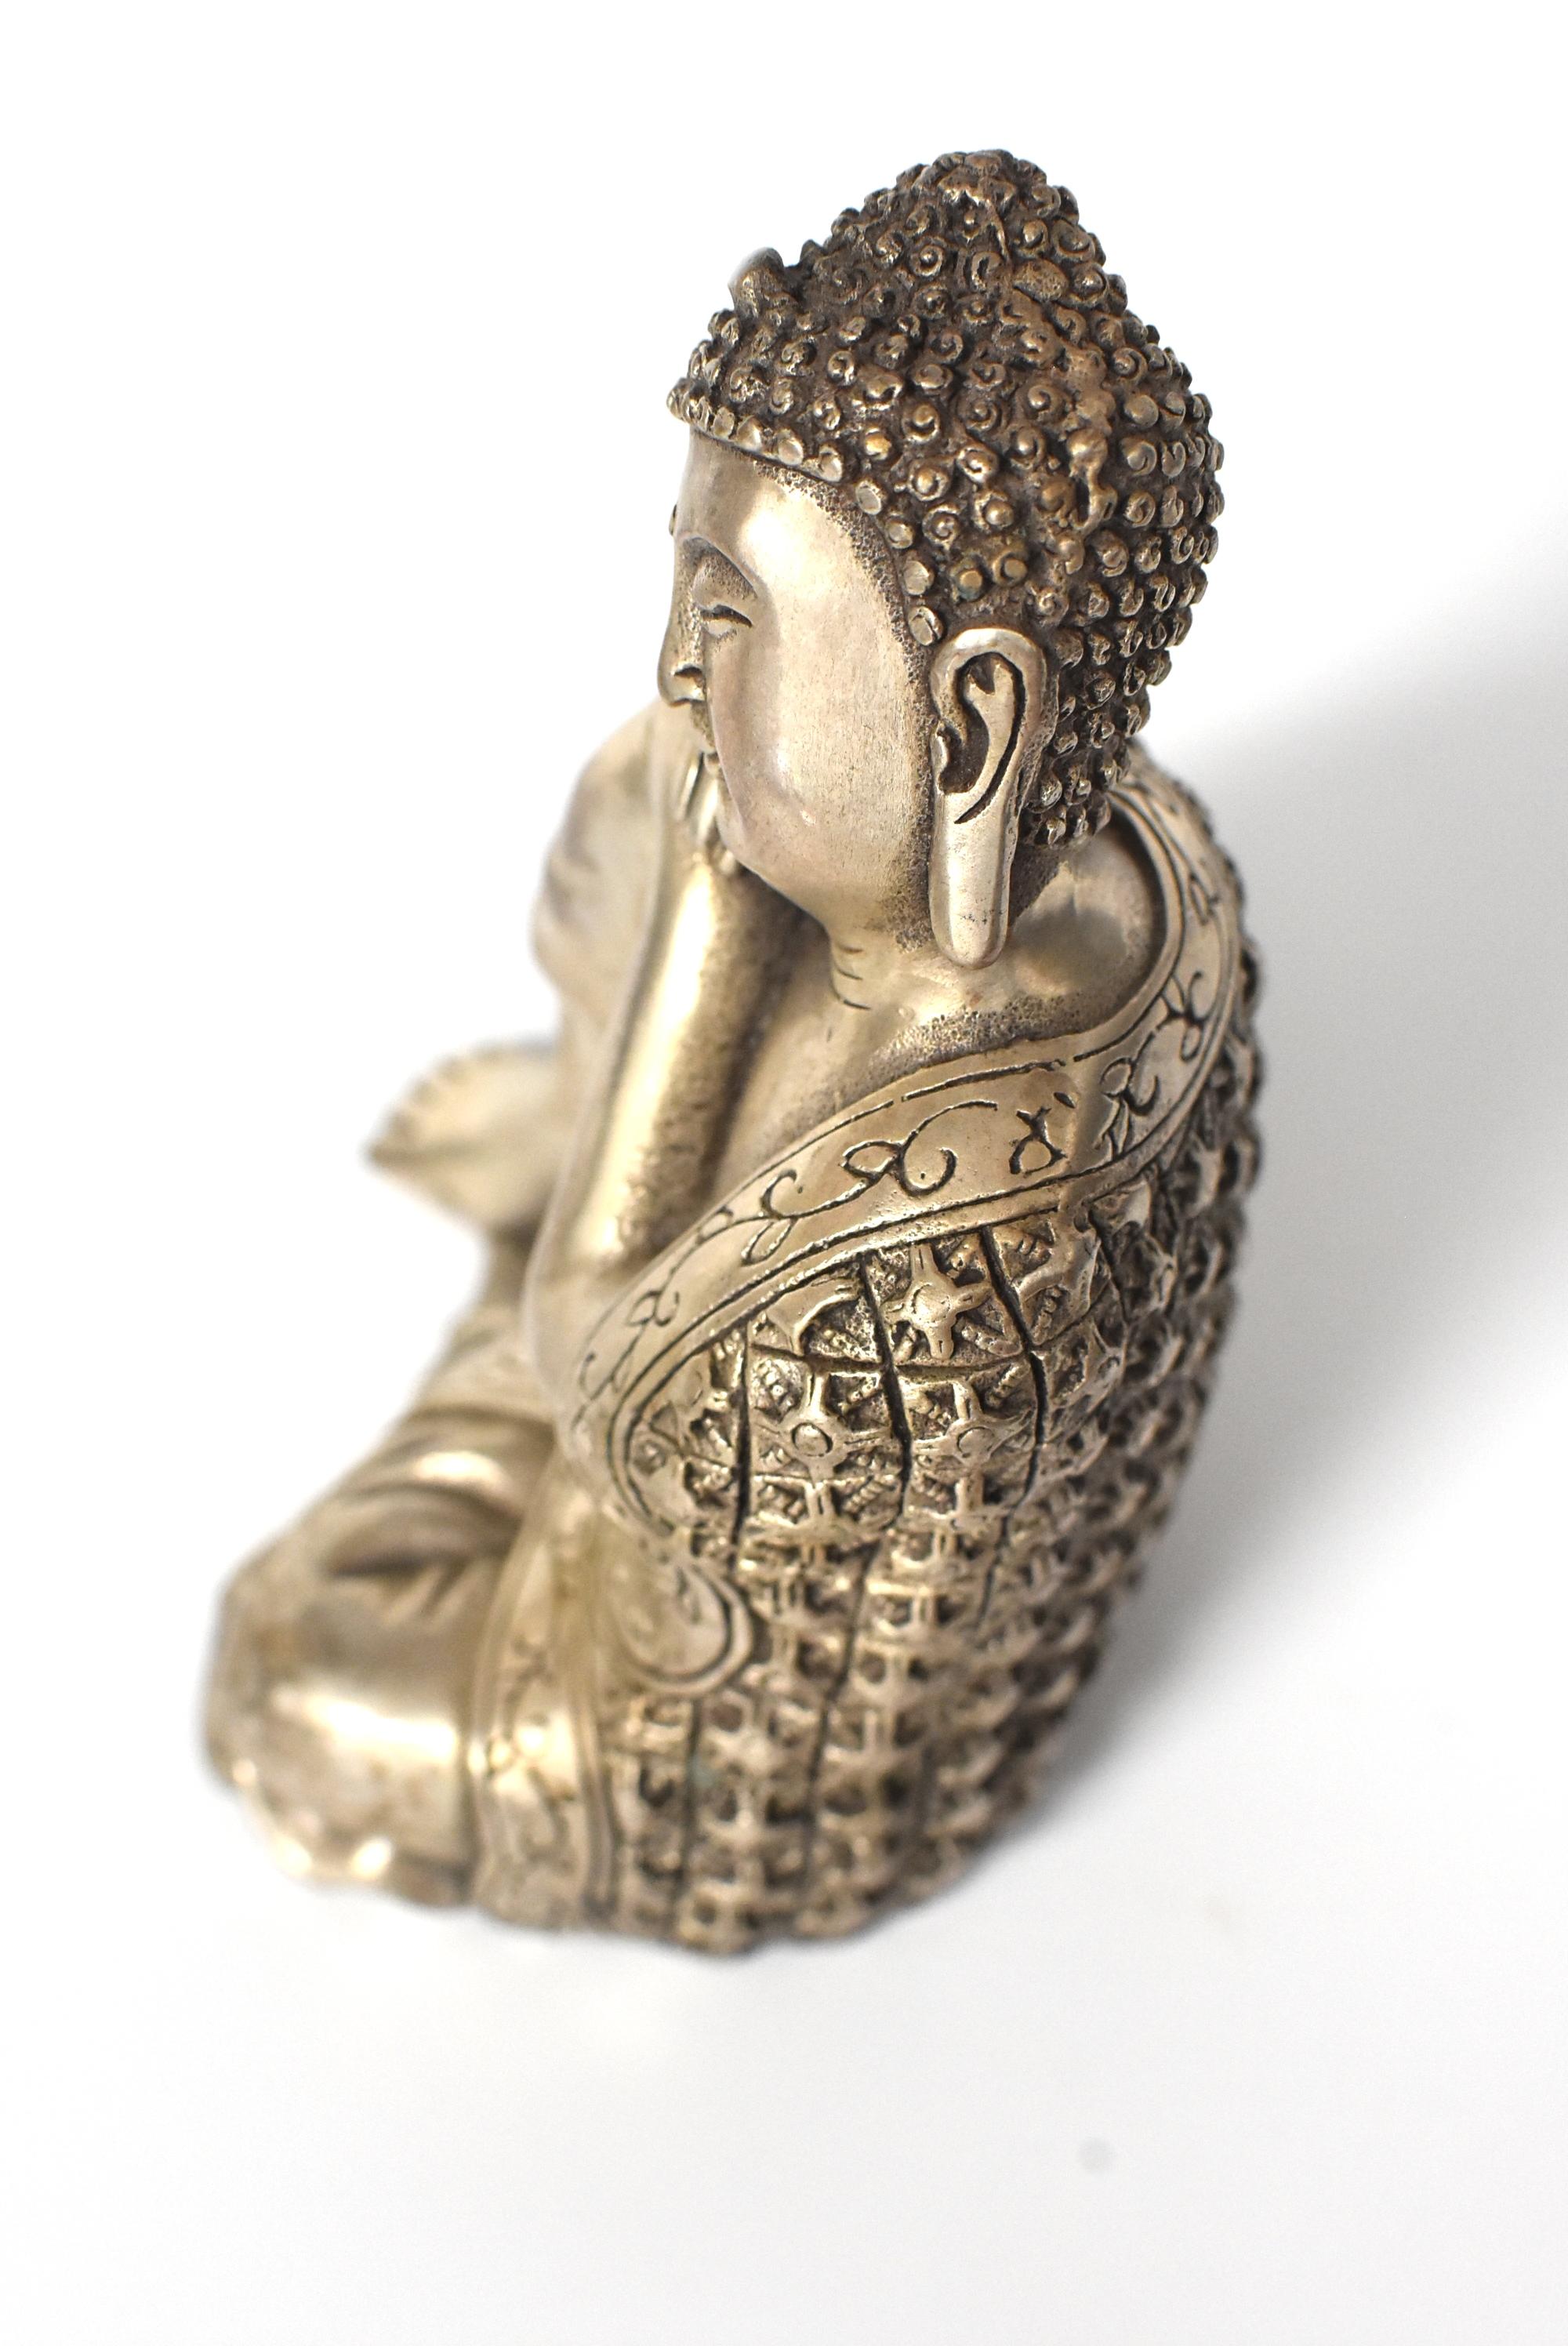 Silvered Brass Buddha Statue, a Thinking Buddha 14